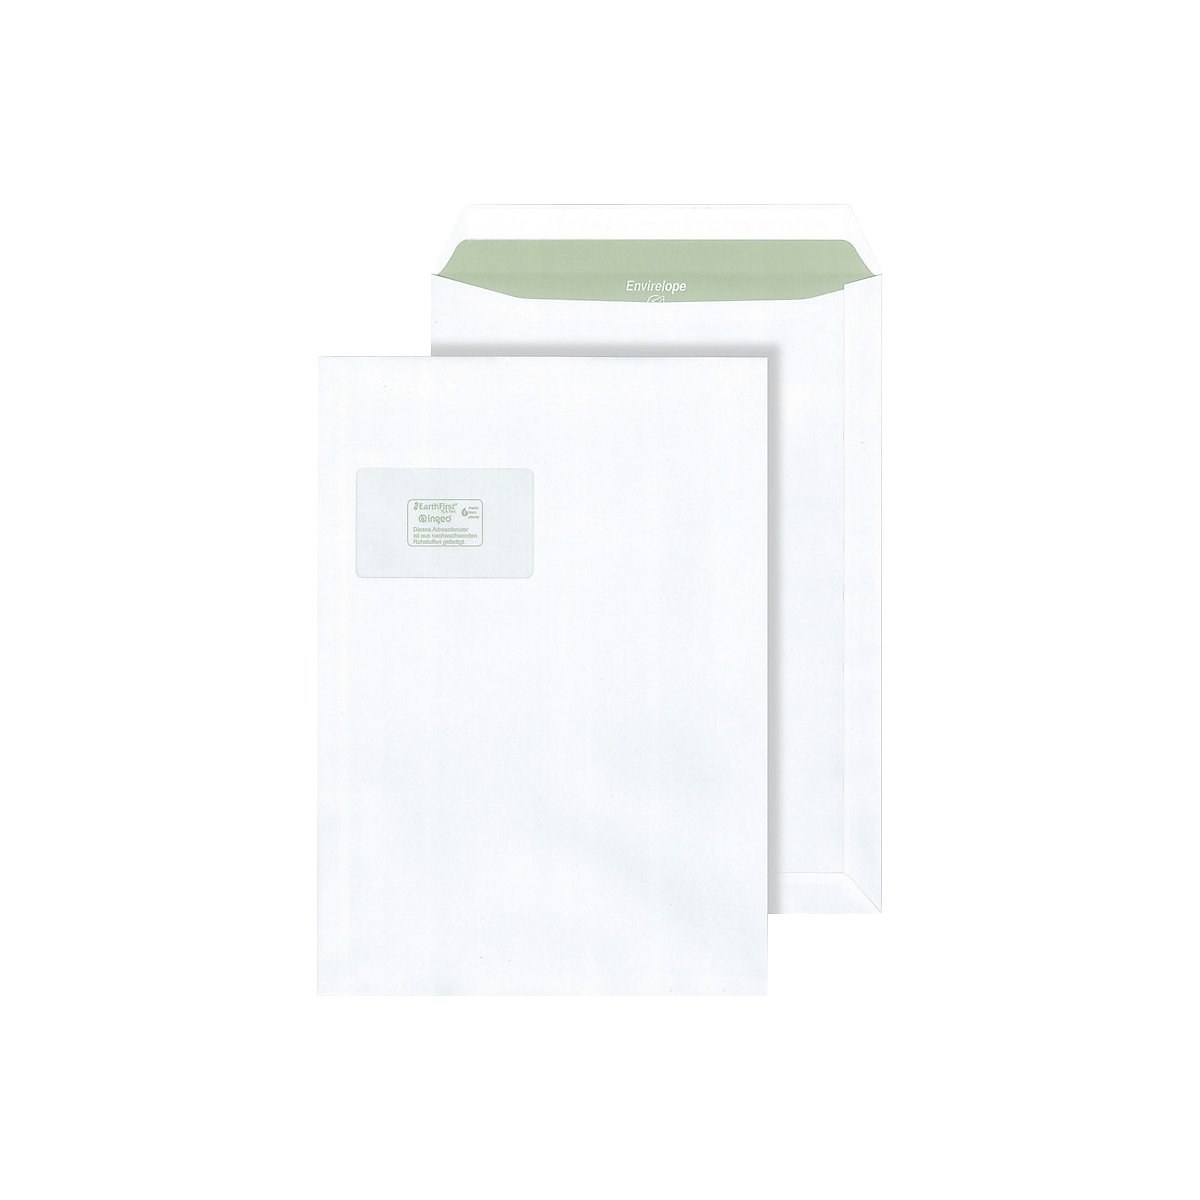 Briefumschläge Envirelope® terra, weiß, mit Fenster, Format C4, VE 250 Stk, ab 10 VE-1